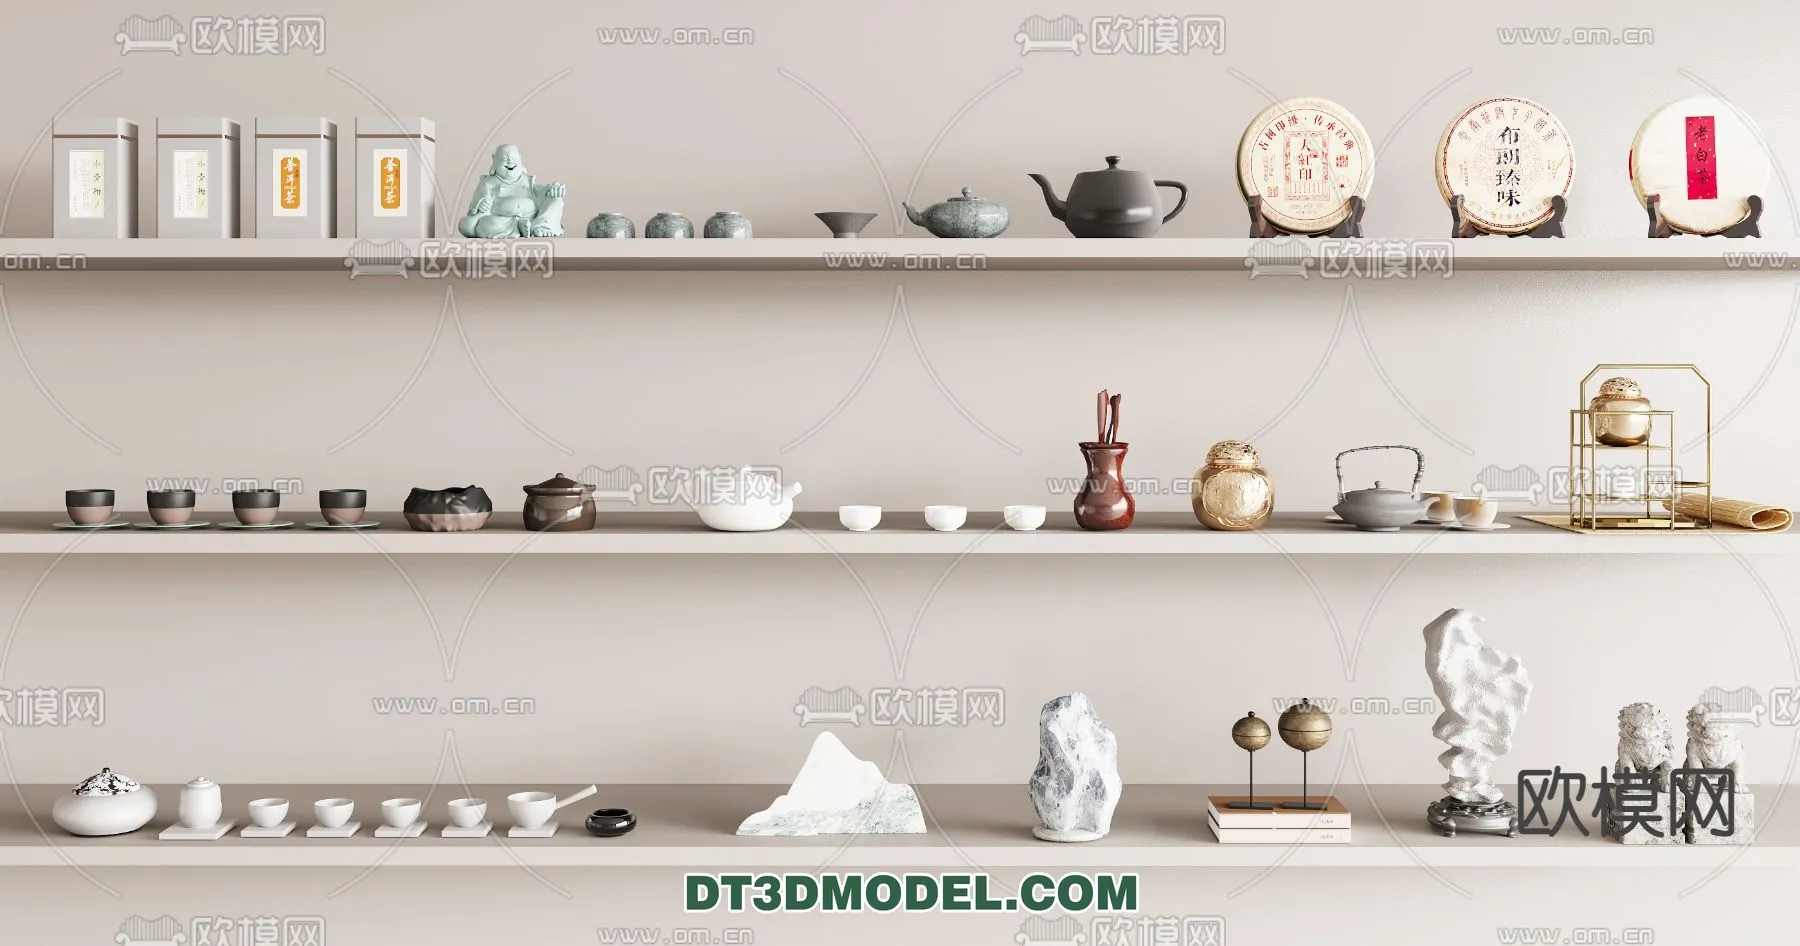 TEAPOT SET 3D MODELS – 004